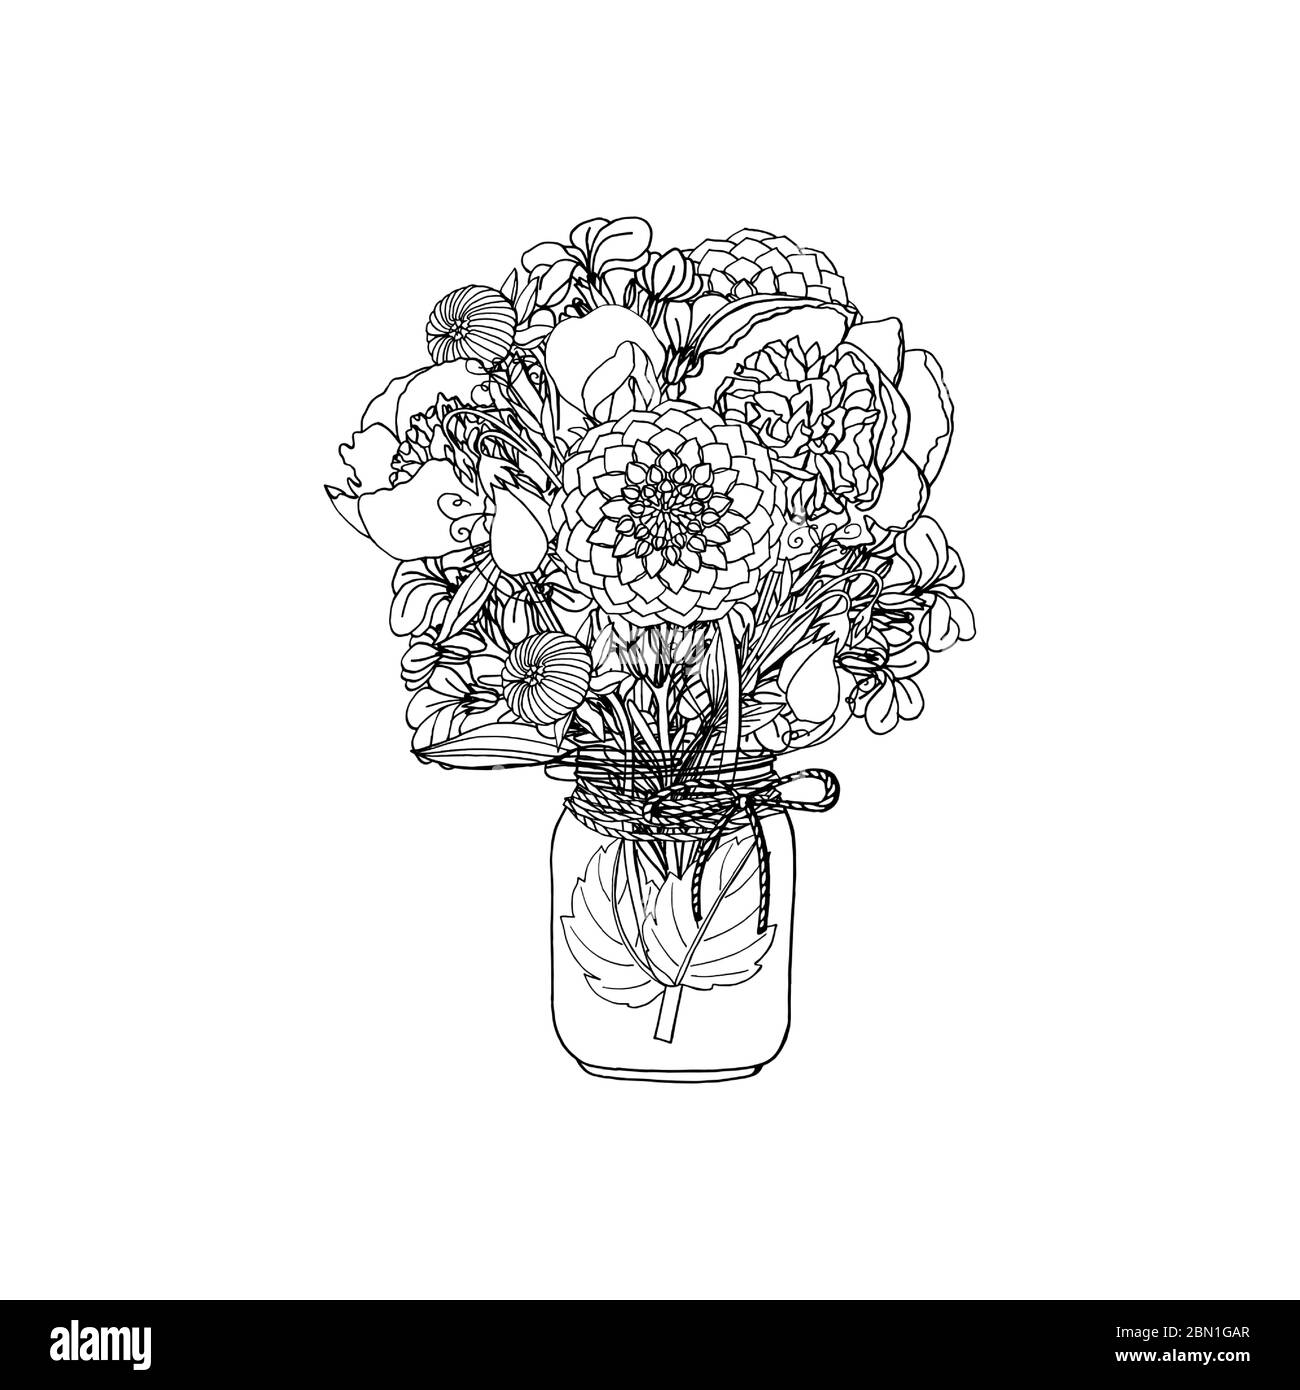 Handgezeichneter Doodle-Stil Bouquet aus verschiedenen Blumen, Pfingstrose, Dahlie, Stockblume, süße Erbse Stock Vektor